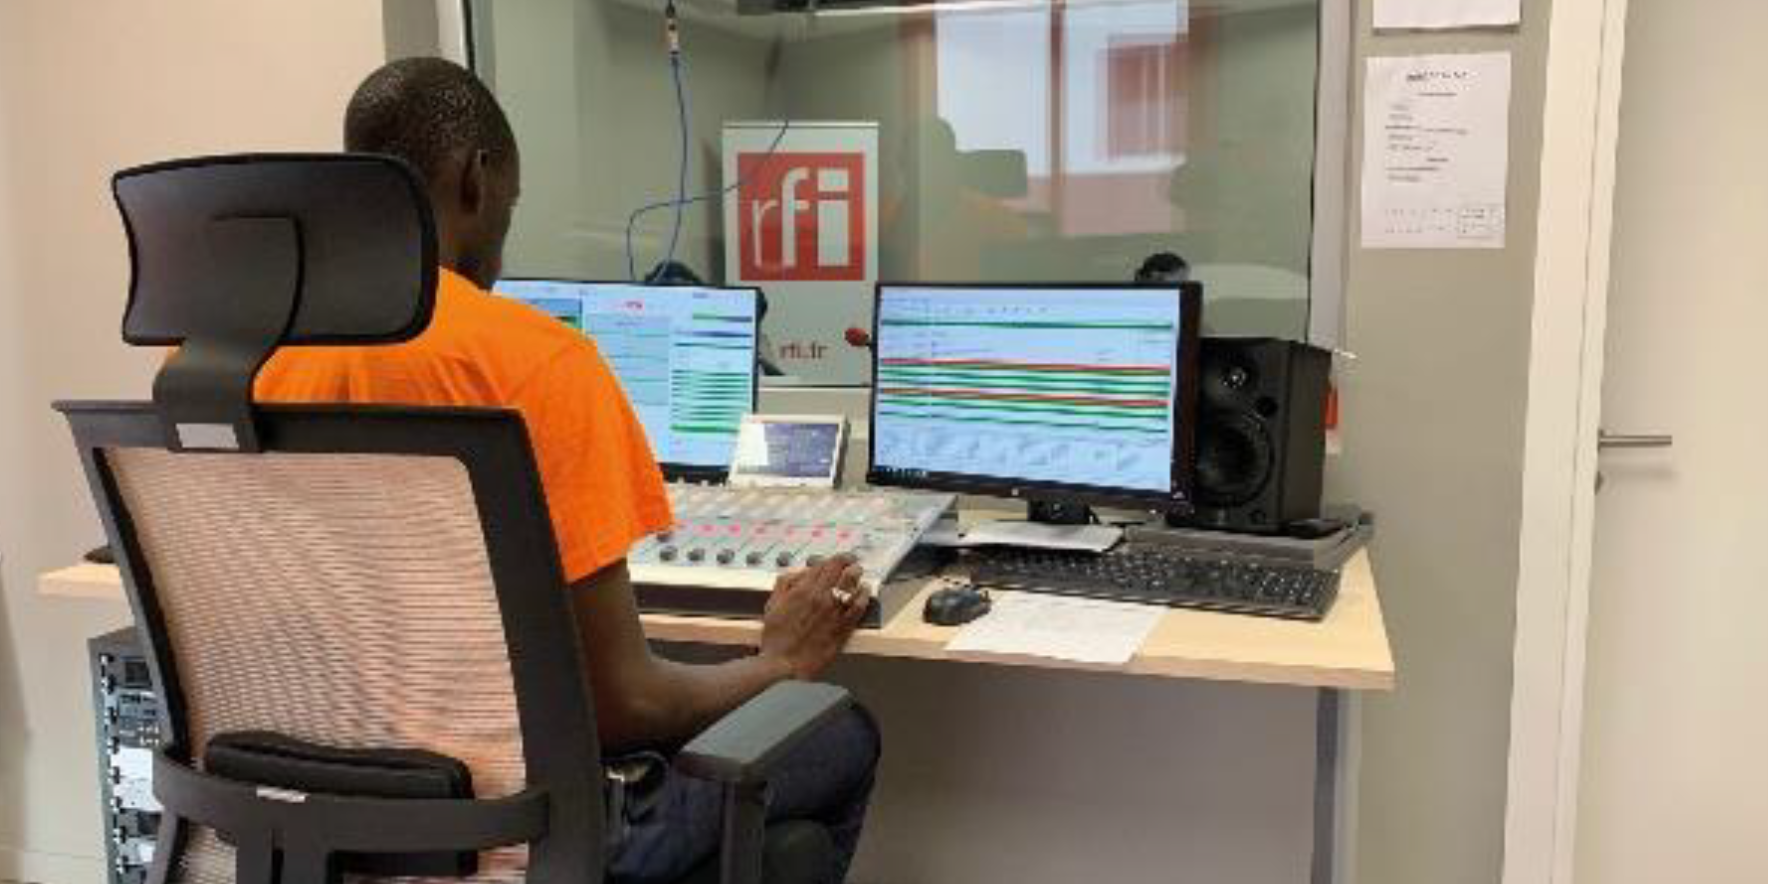 La nouvelle implantation dakaroise de RFI présente une opportunité nouvelle pour le groupe FMM en termes d’infrastructures, d’équipements et de compétences sur place afin de permettre d’amplifier les actions de formation et partenariat au Sénégal